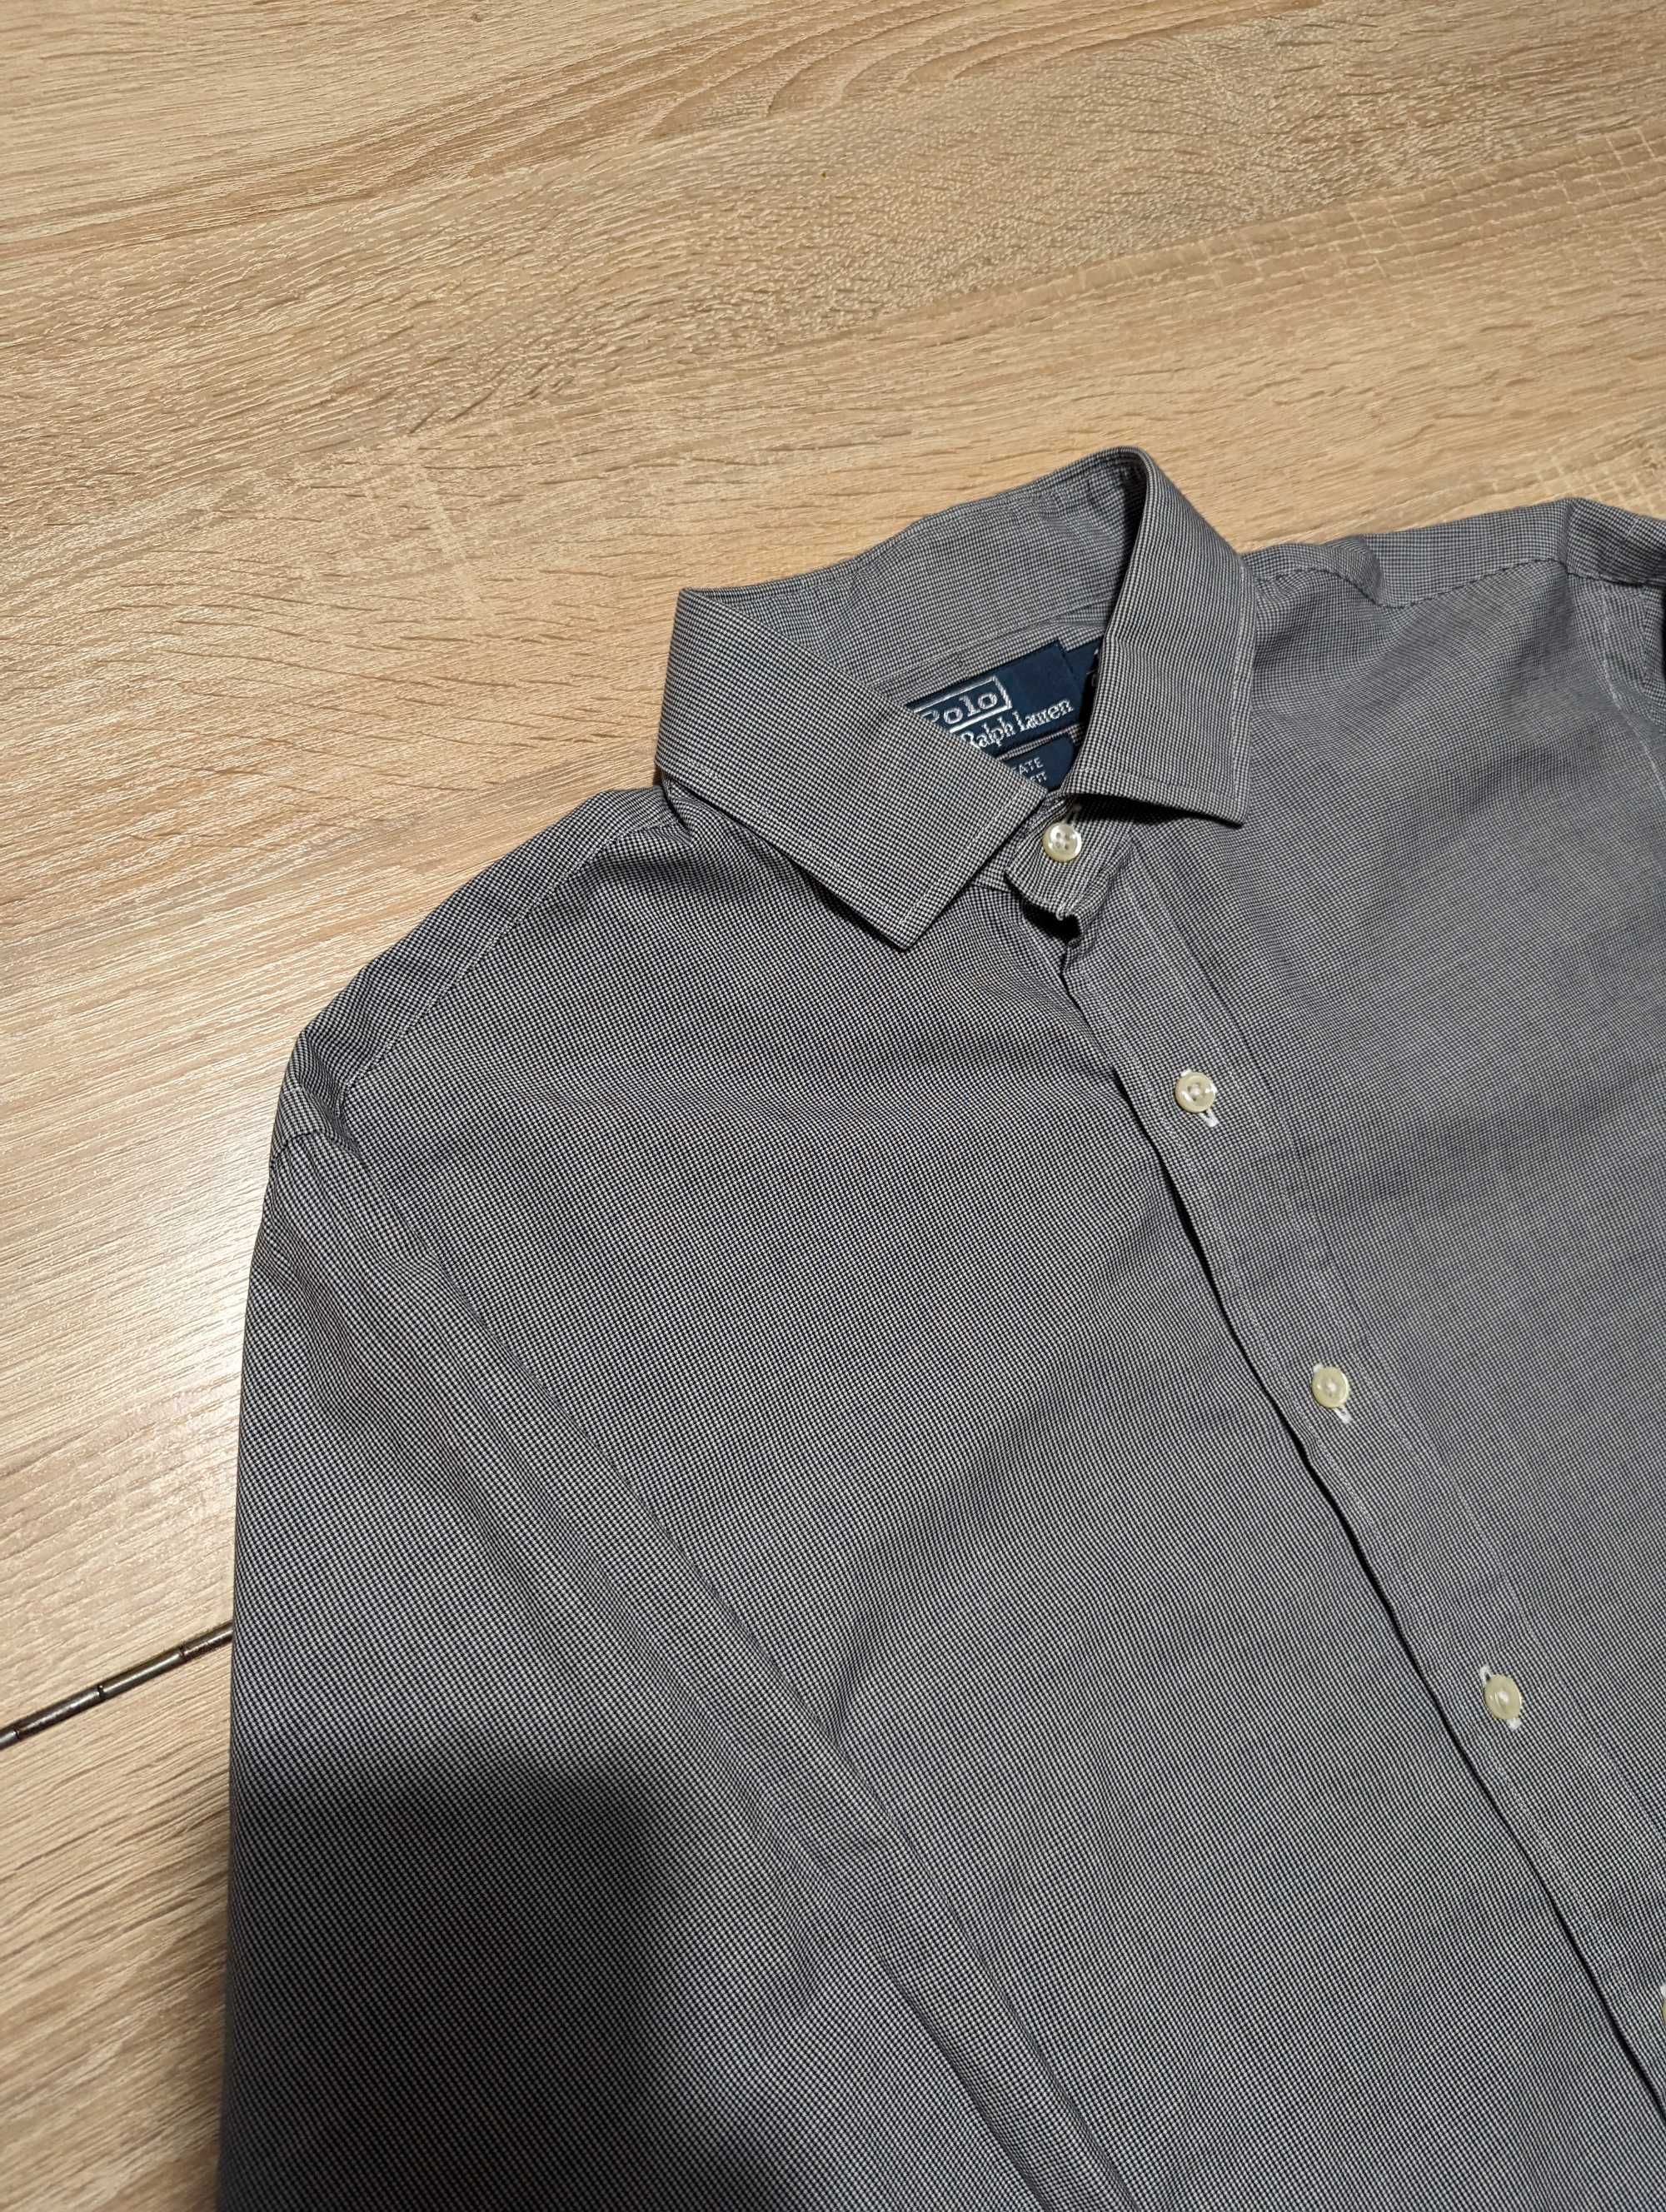 Мужская сорочка, рубашка Ralph Lauren,M(41)